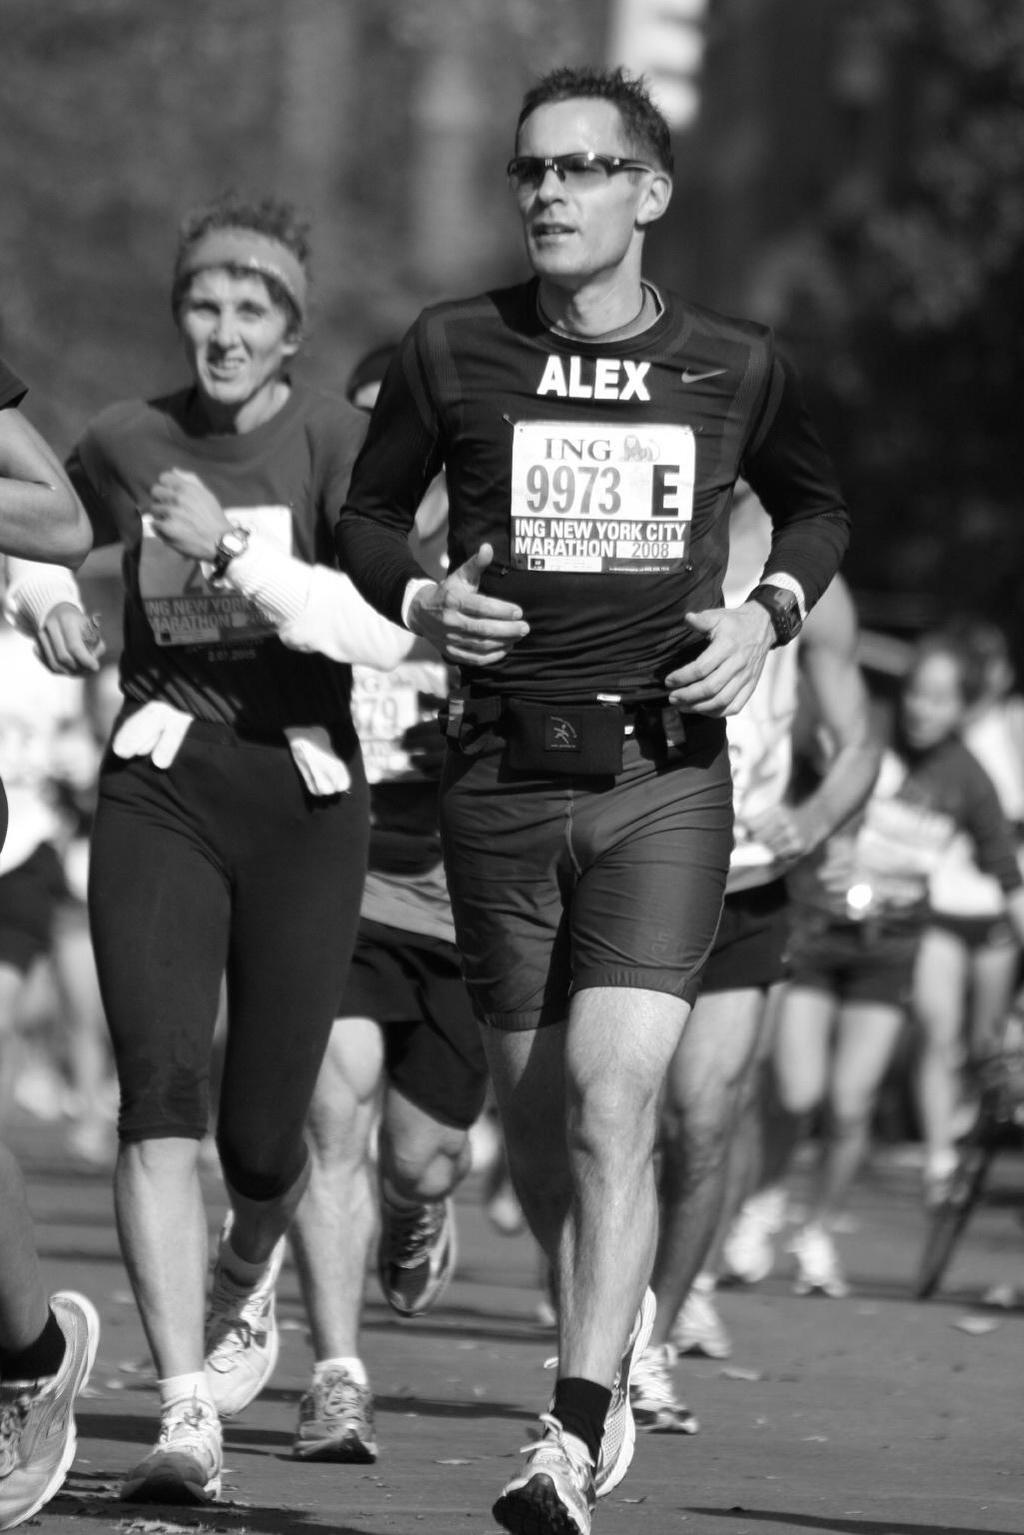 Mijn eerste marathon: New York City Marathon, 2 november 2008 Ik ben er van overtuigd dat iedereen die de marathon wil lopen, deze ook daadwerkelijk kan lopen. Uiteindelijk gaat alles om motivatie.